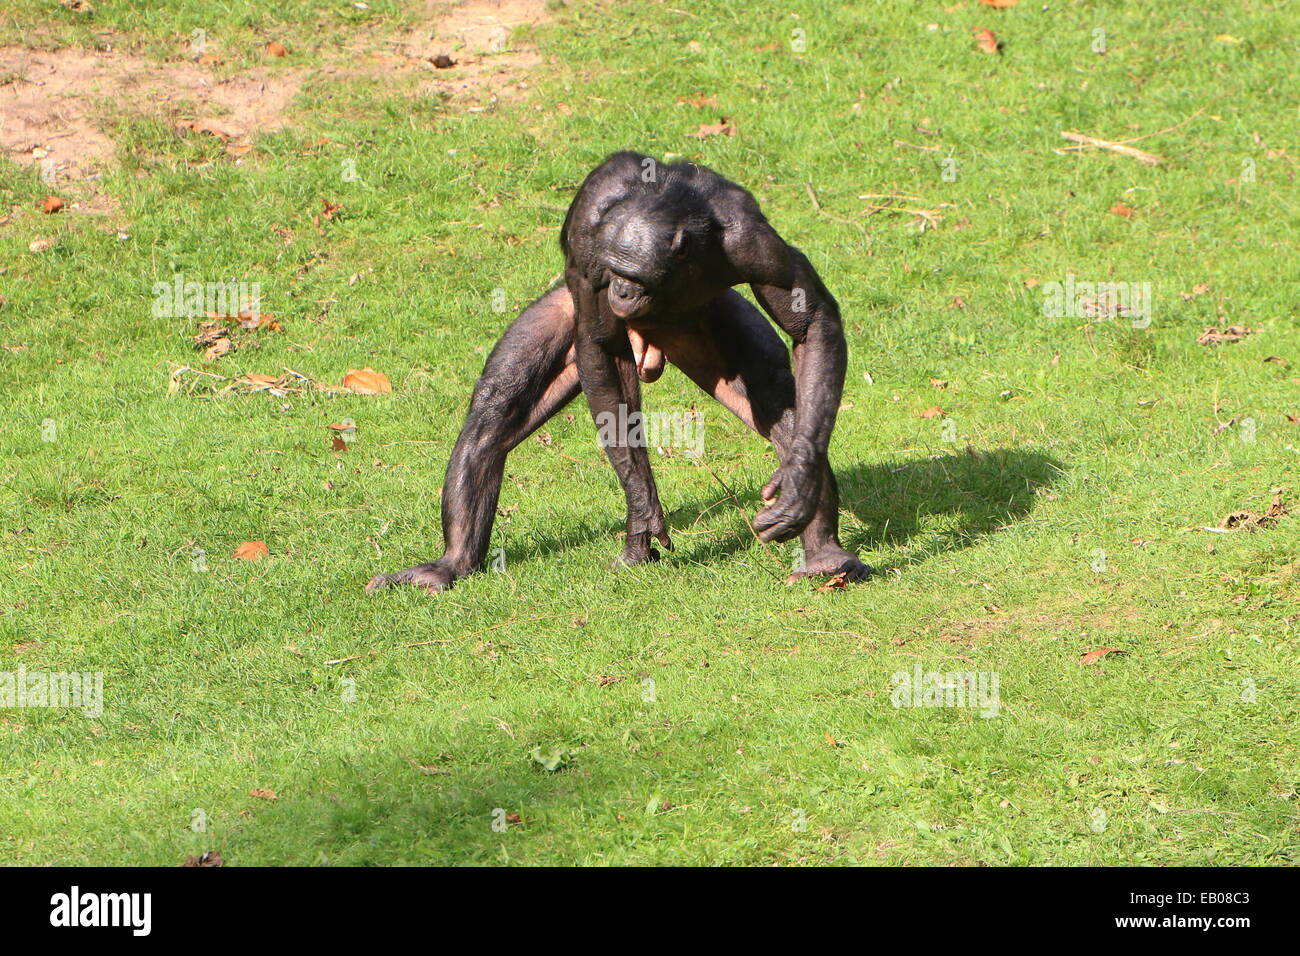 Macho líder de un grupo de africanos chimpancés pigmeos o bonobos (Pan paniscus) caminando en un entorno natural Foto de stock